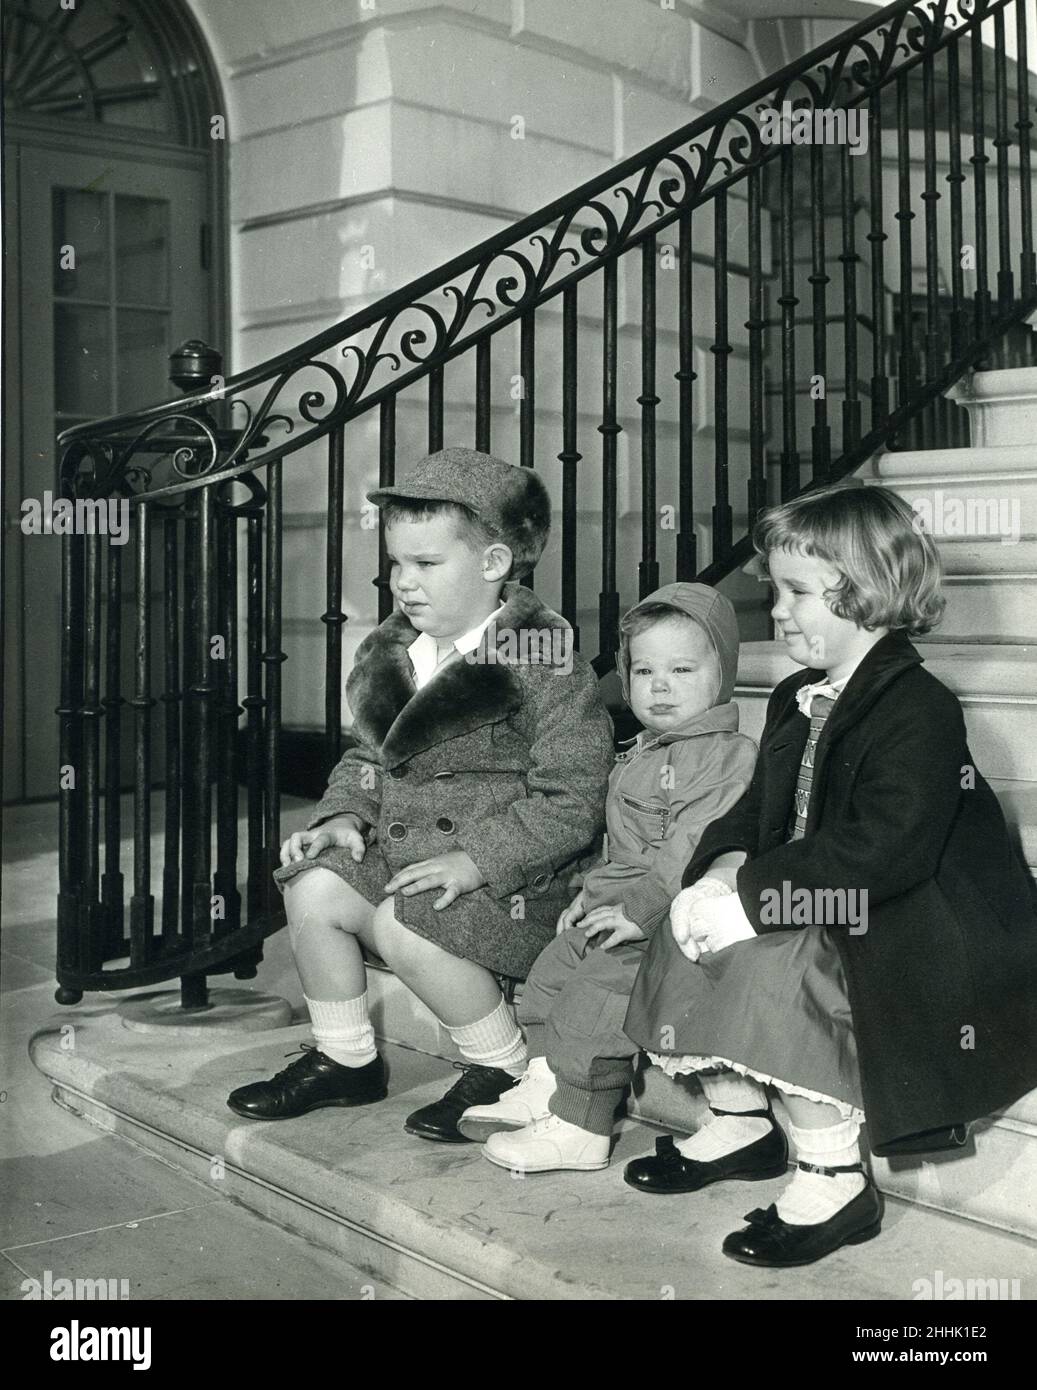 Los nietos del presidente Dwight Eisenhower, David, Susan y Anne, hijos de John Eisenhower, posando en la Casa Blanca, el 13 de marzo de 1953. Foto: Abbie Rowe Foto de stock